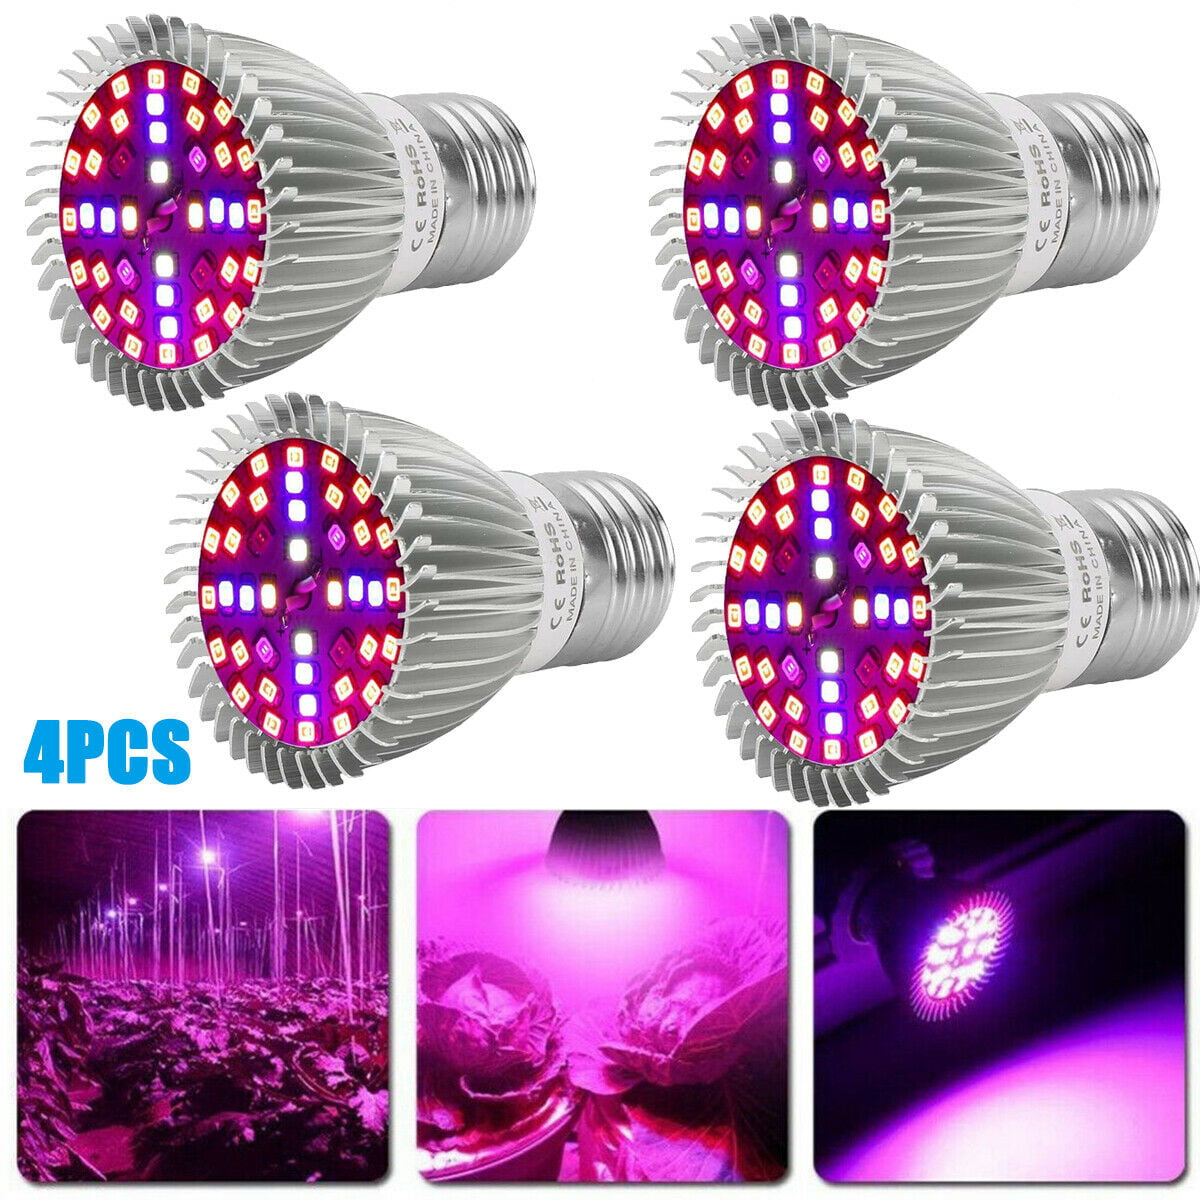 4pcs E27 LED Grow Light Bulbs Full Spectrum Plant Growing Lamp Indoor Flower Veg 